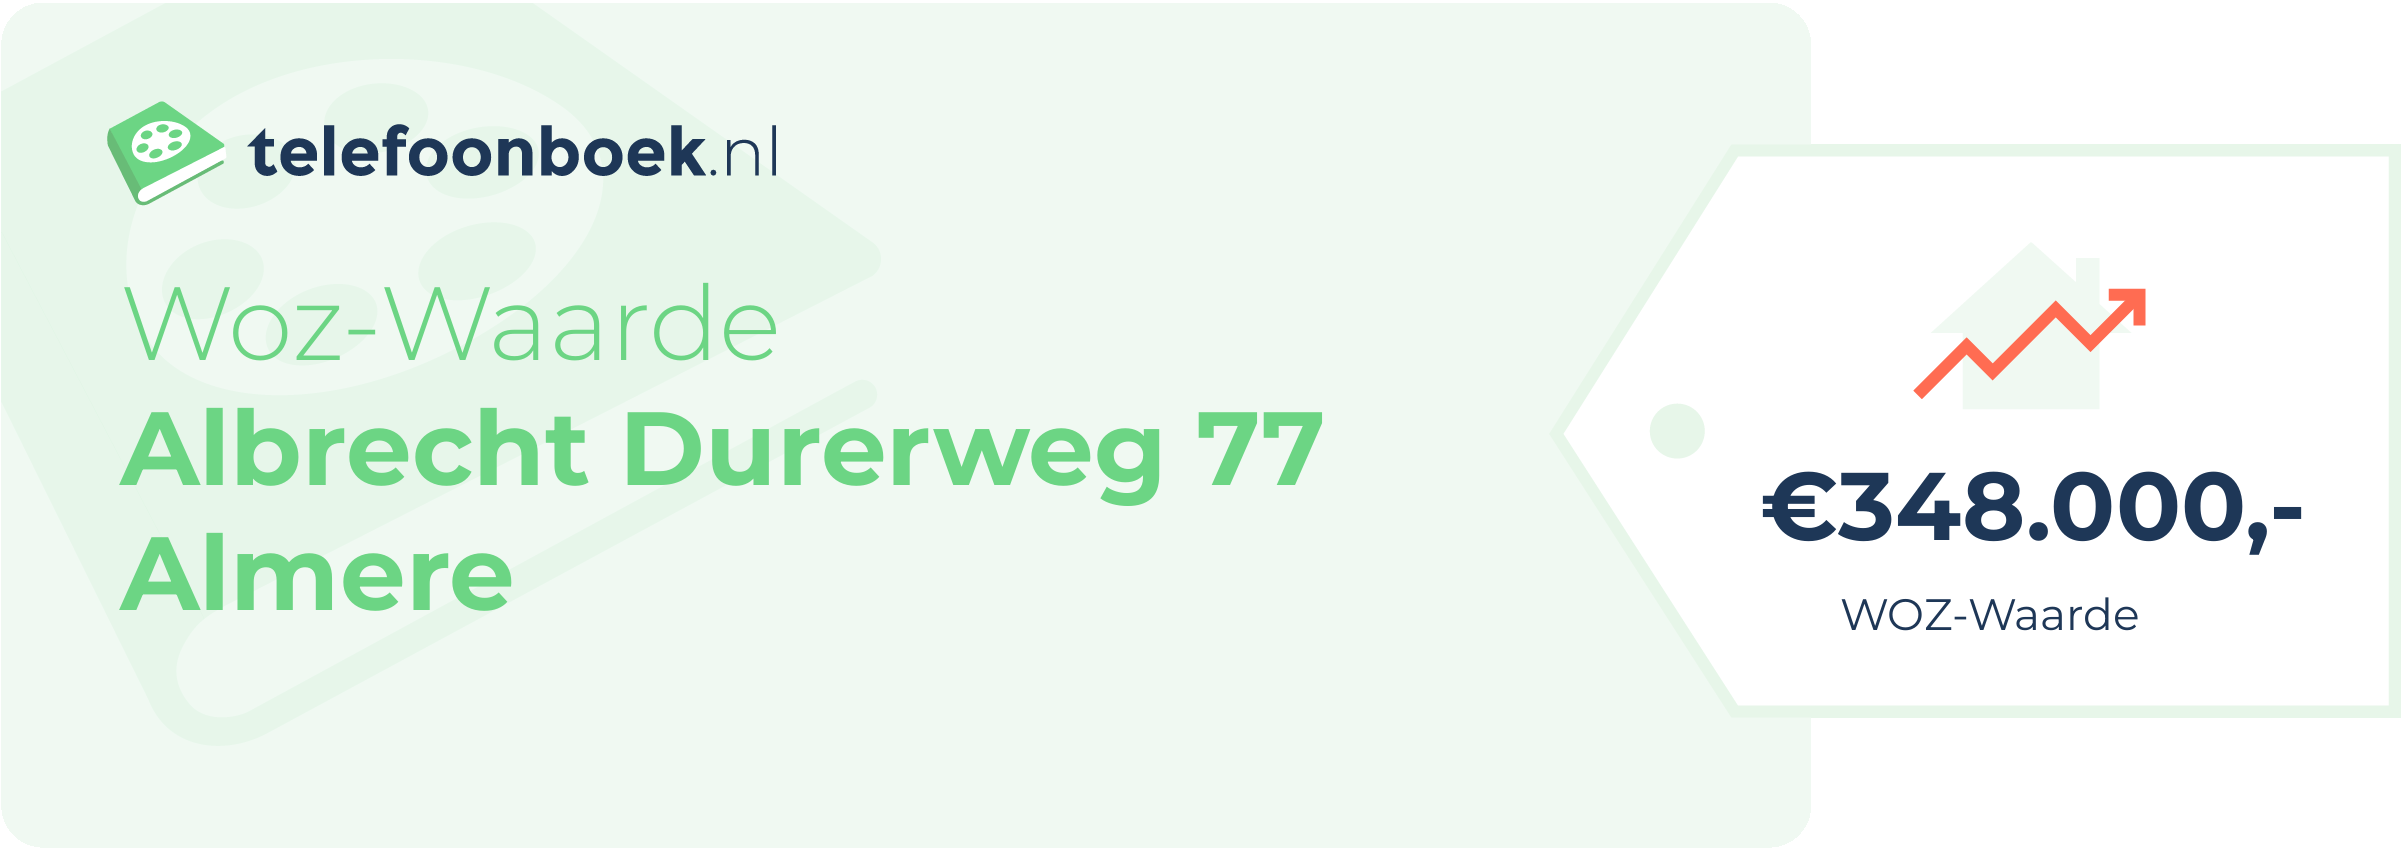 WOZ-waarde Albrecht Durerweg 77 Almere